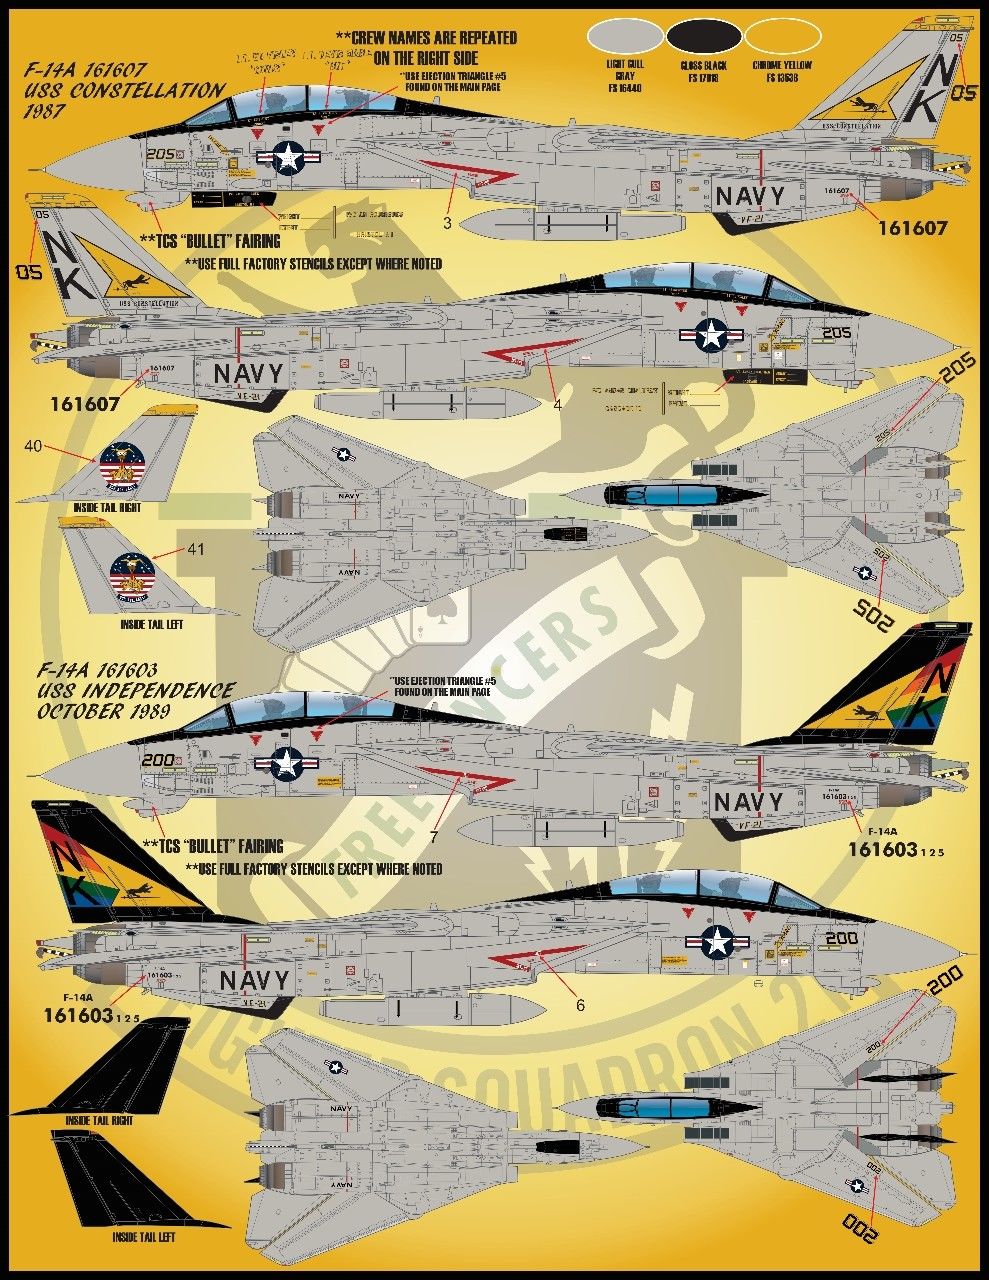 1/48 F-14A 雄猫战斗机"色彩与标记"(4)